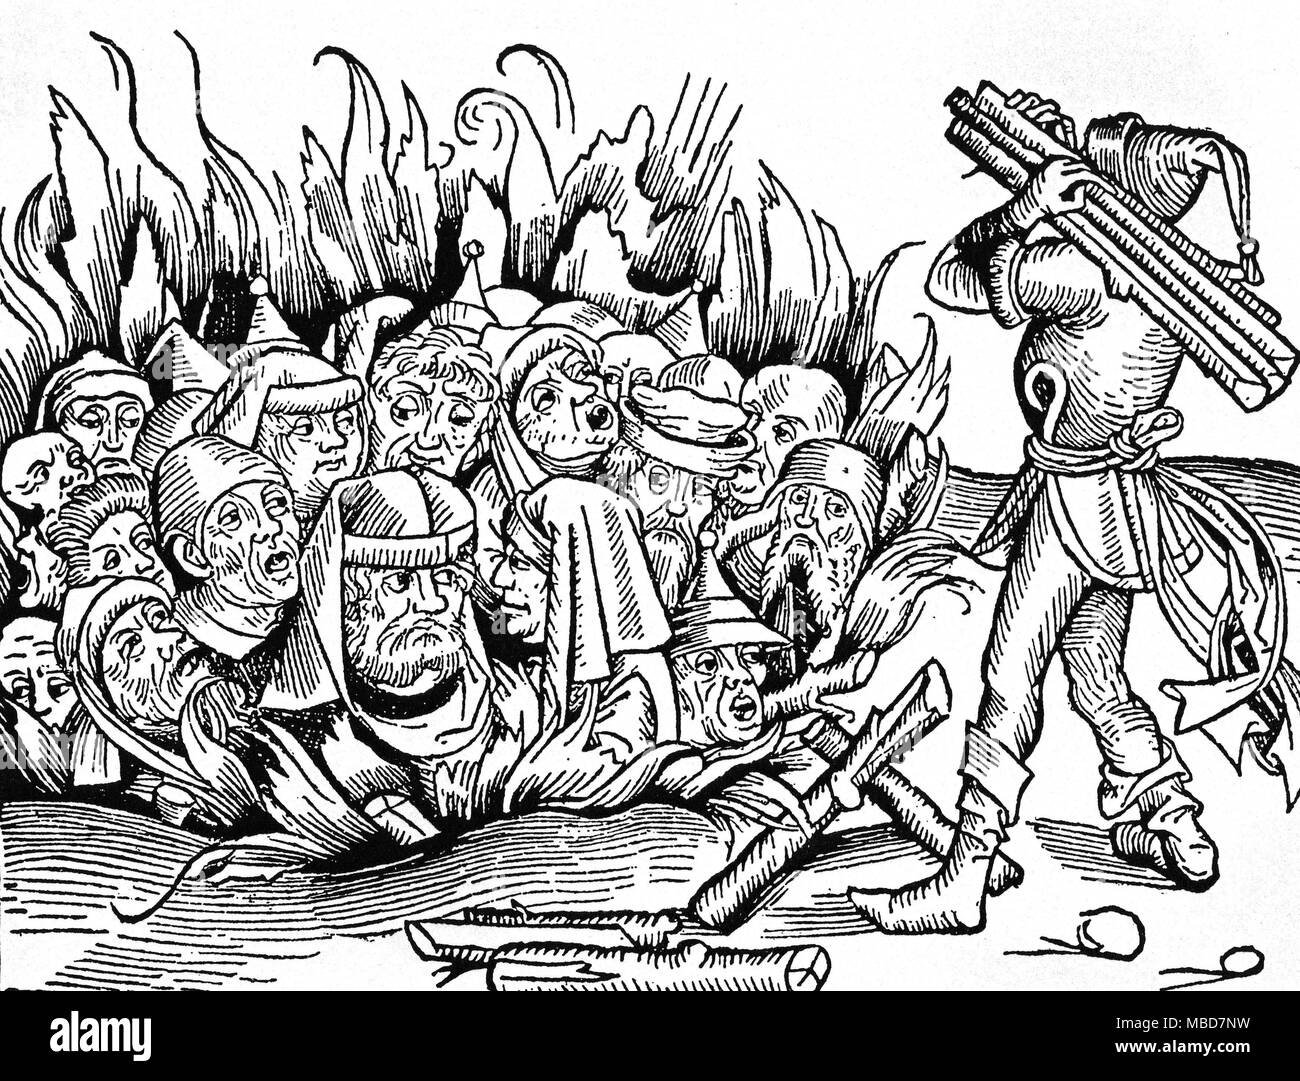 La mythologie juive - Incendie de la gravure sur bois représentant l'incendie les juifs des Juifs, dans une fosse - la coupe est attribuée à Wohlgemuth, dans Schedel, Weltchronik, 1493. Banque D'Images